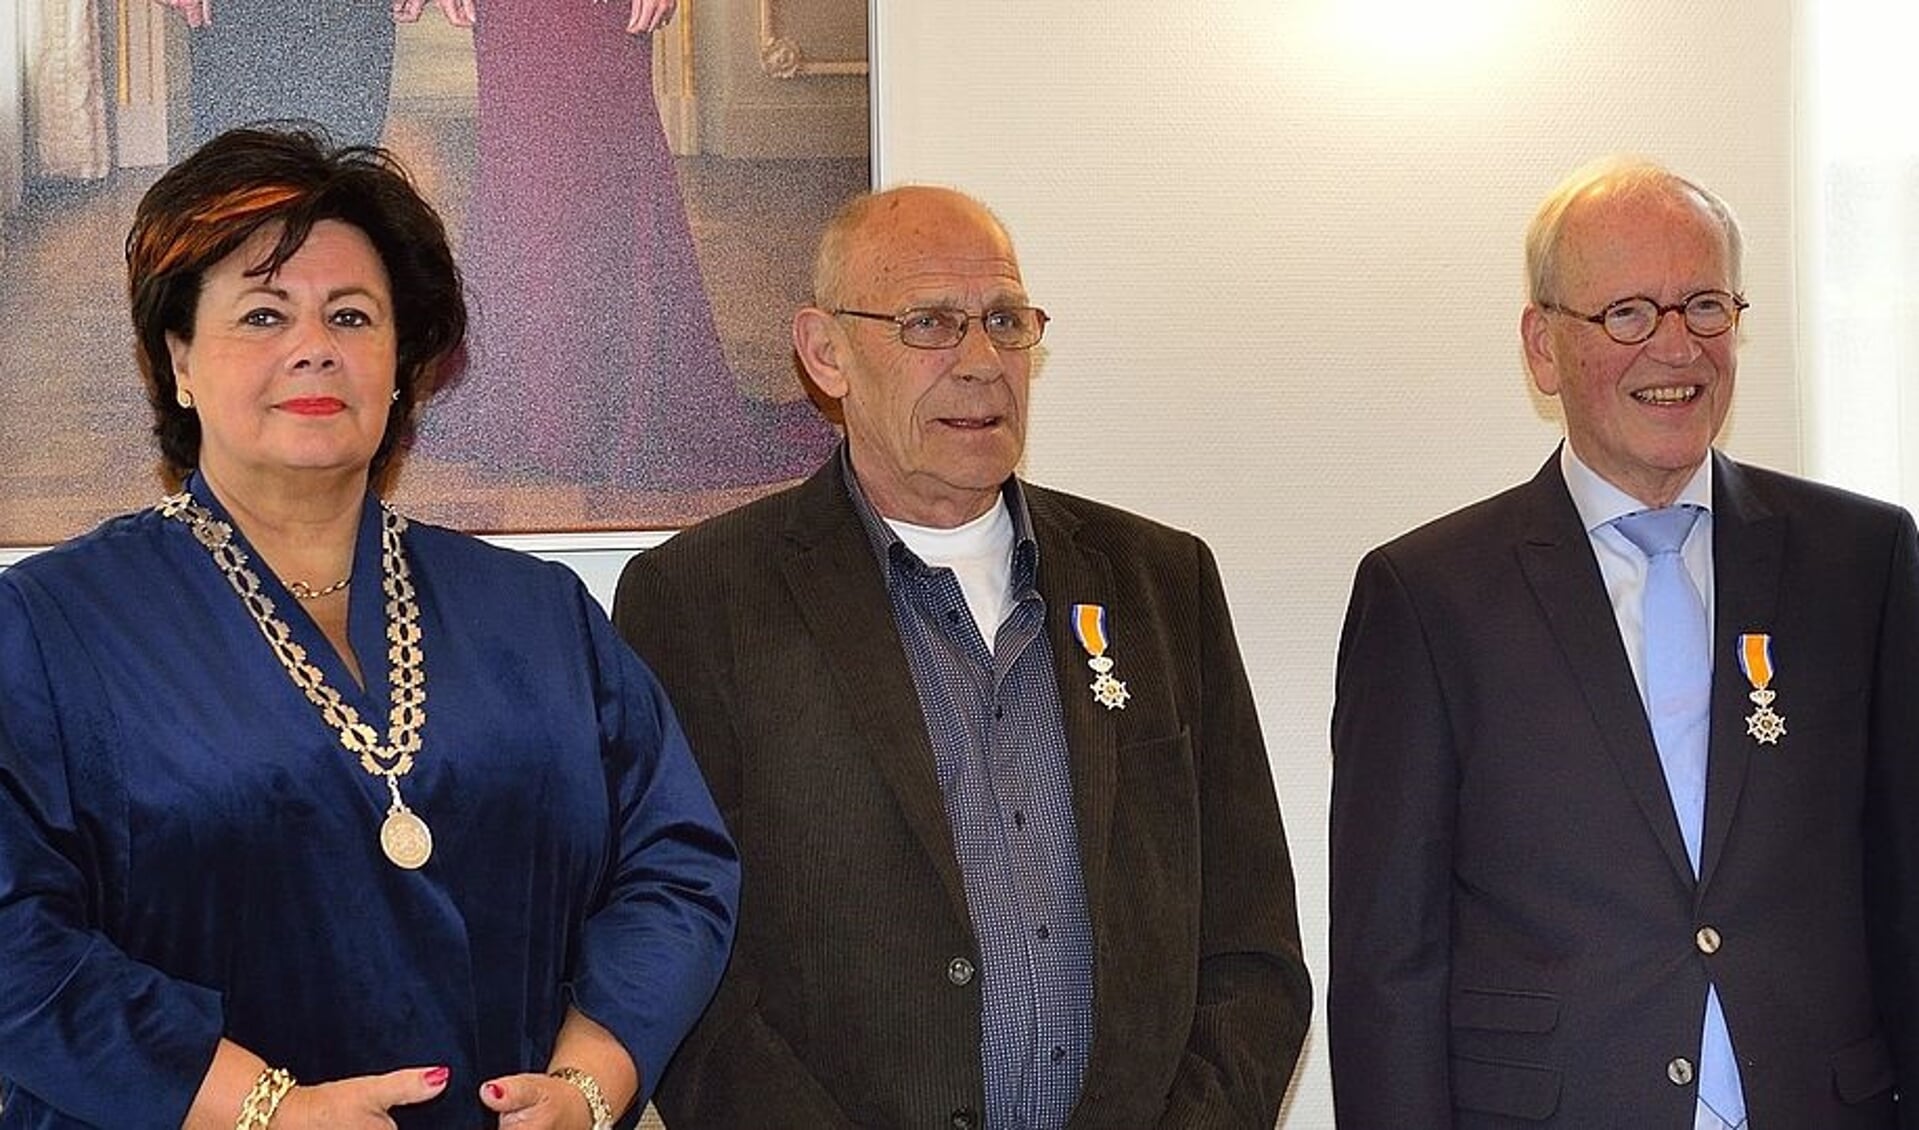 Burgemeester Verkleij met de gedecoreerden: in het midden Dick Zonneveld en rechts Teun Jonker. De heer Kees den Boer staat niet op de foto maar kreeg ook een lintje. 